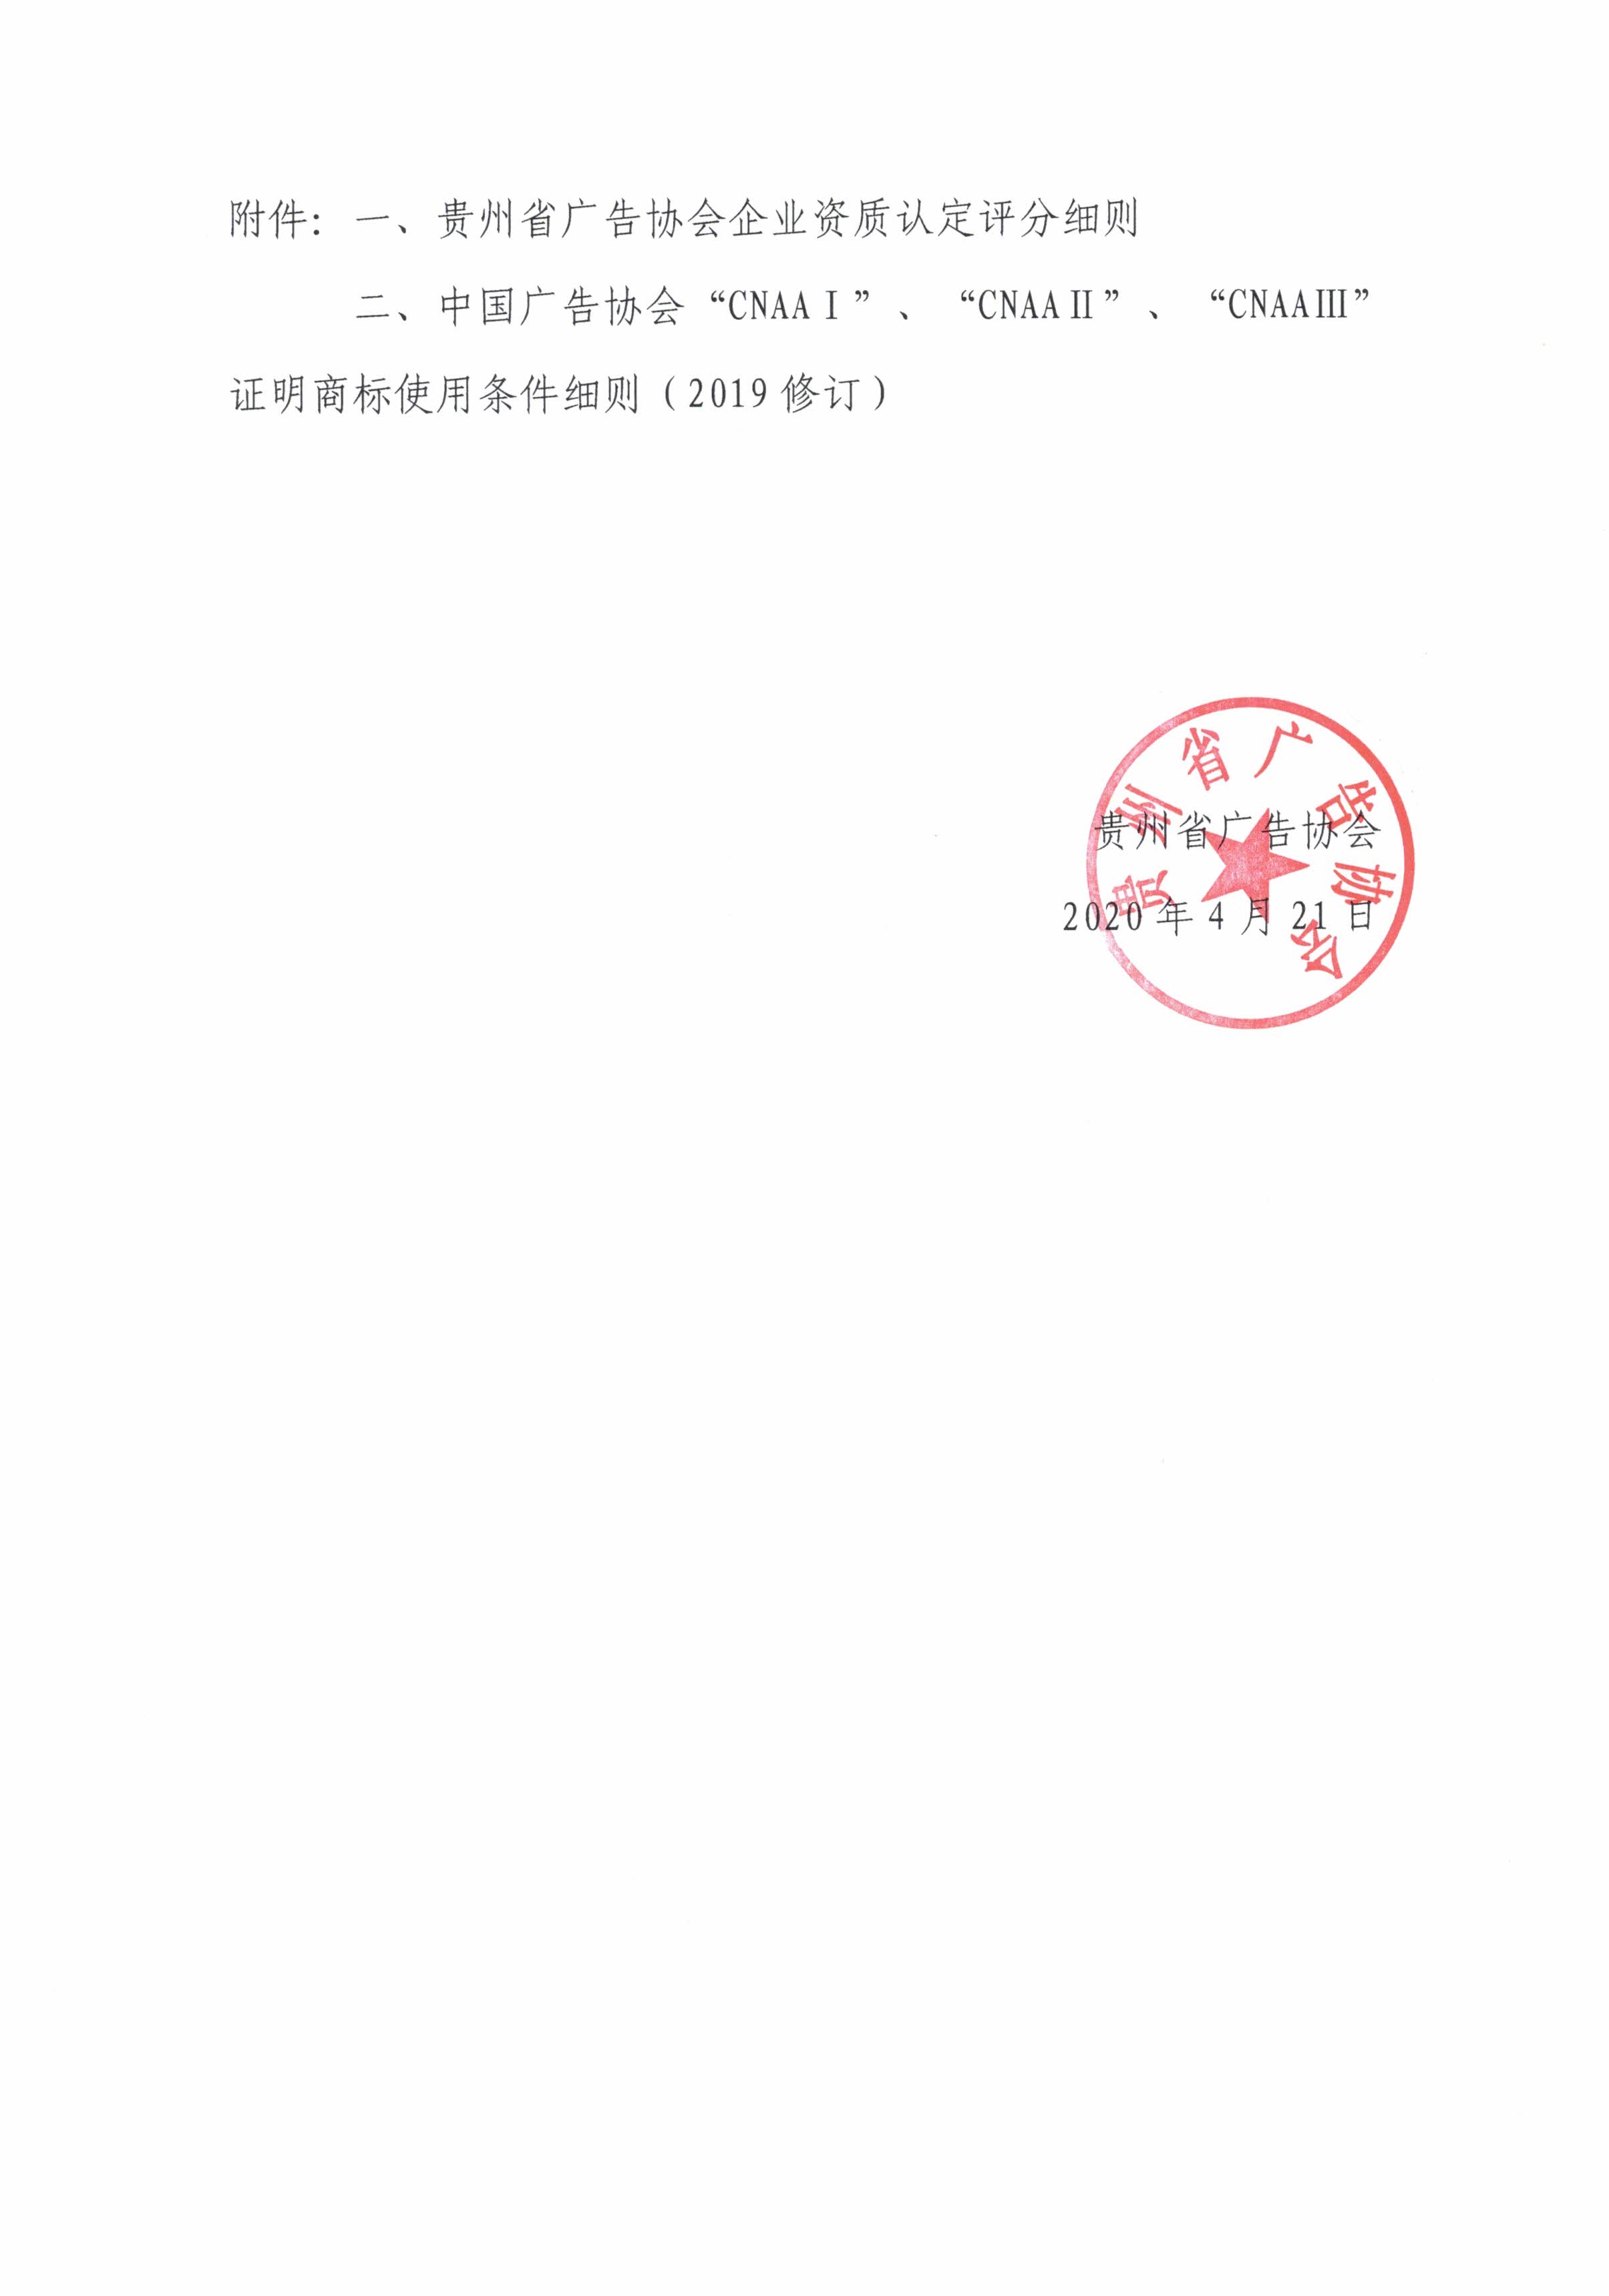 贵州省广告协会关于开展2020年度中广协“CNAAⅠ”、“CNAAⅡ”、“CNAAⅢ” 证明商标使用管理工作的通知_000059.jpg